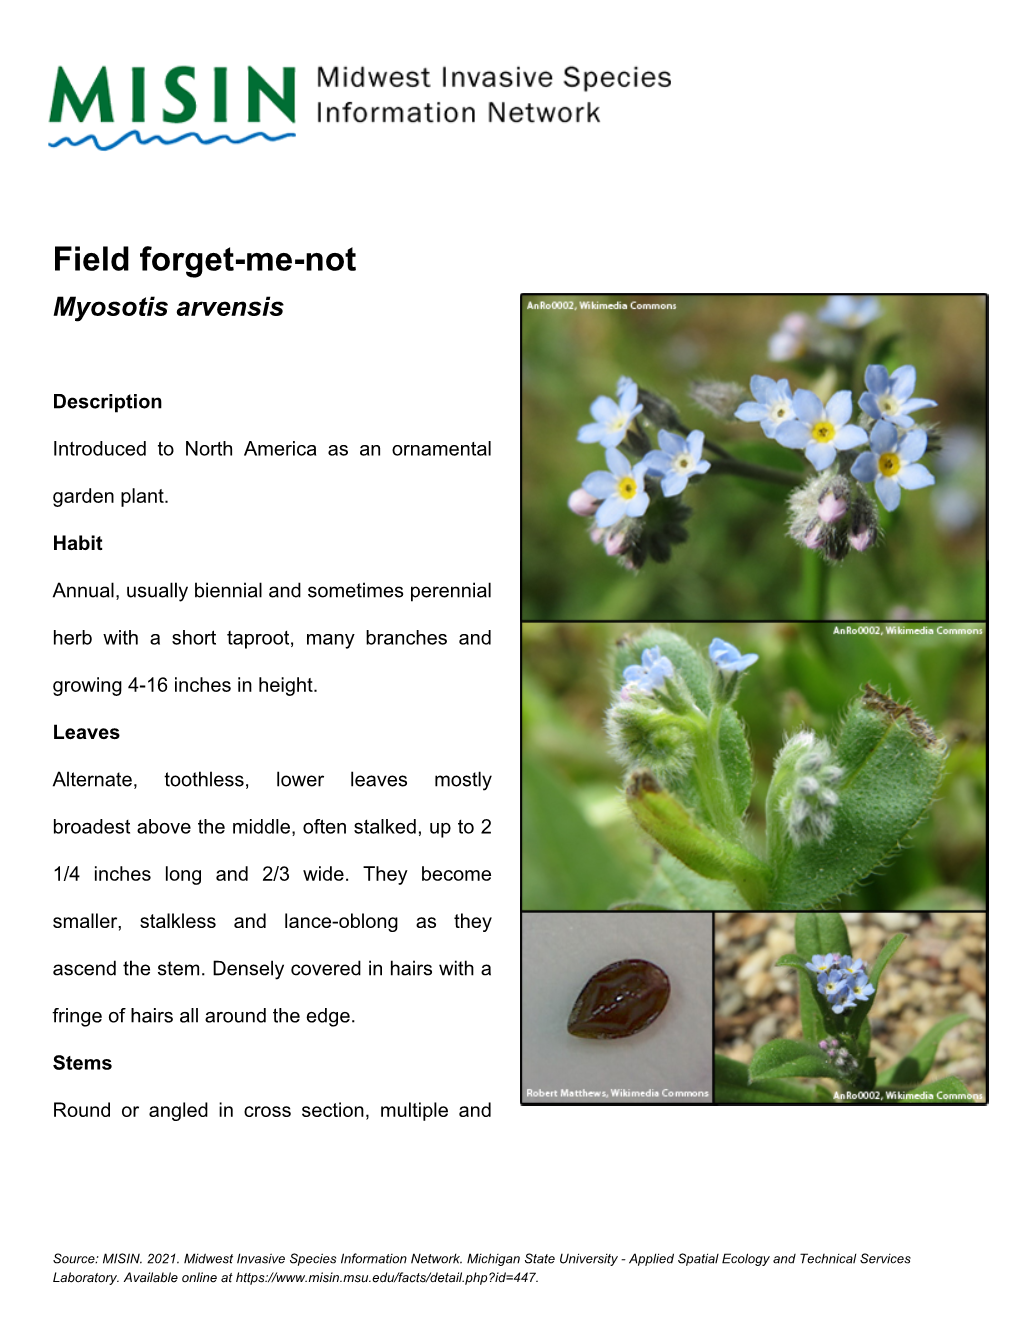 Field Forget-Me-Not Myosotis Arvensis